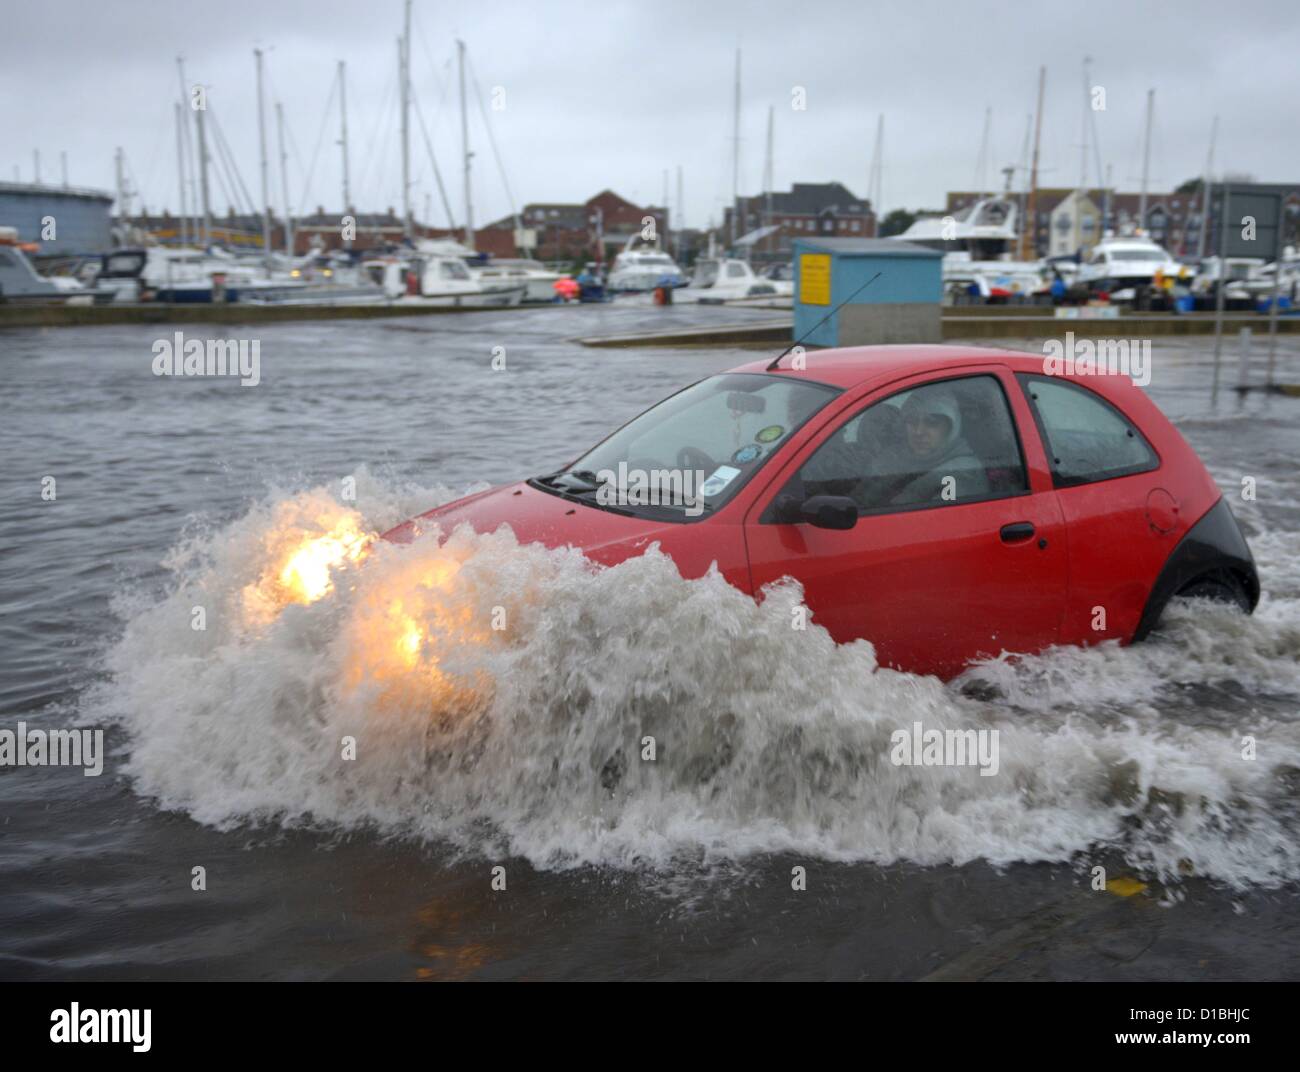 Les inondations à Weymouth, Dorset, UK 14 Décembre, 2012 Photo par : DORSET MEDIA SERVICE Banque D'Images